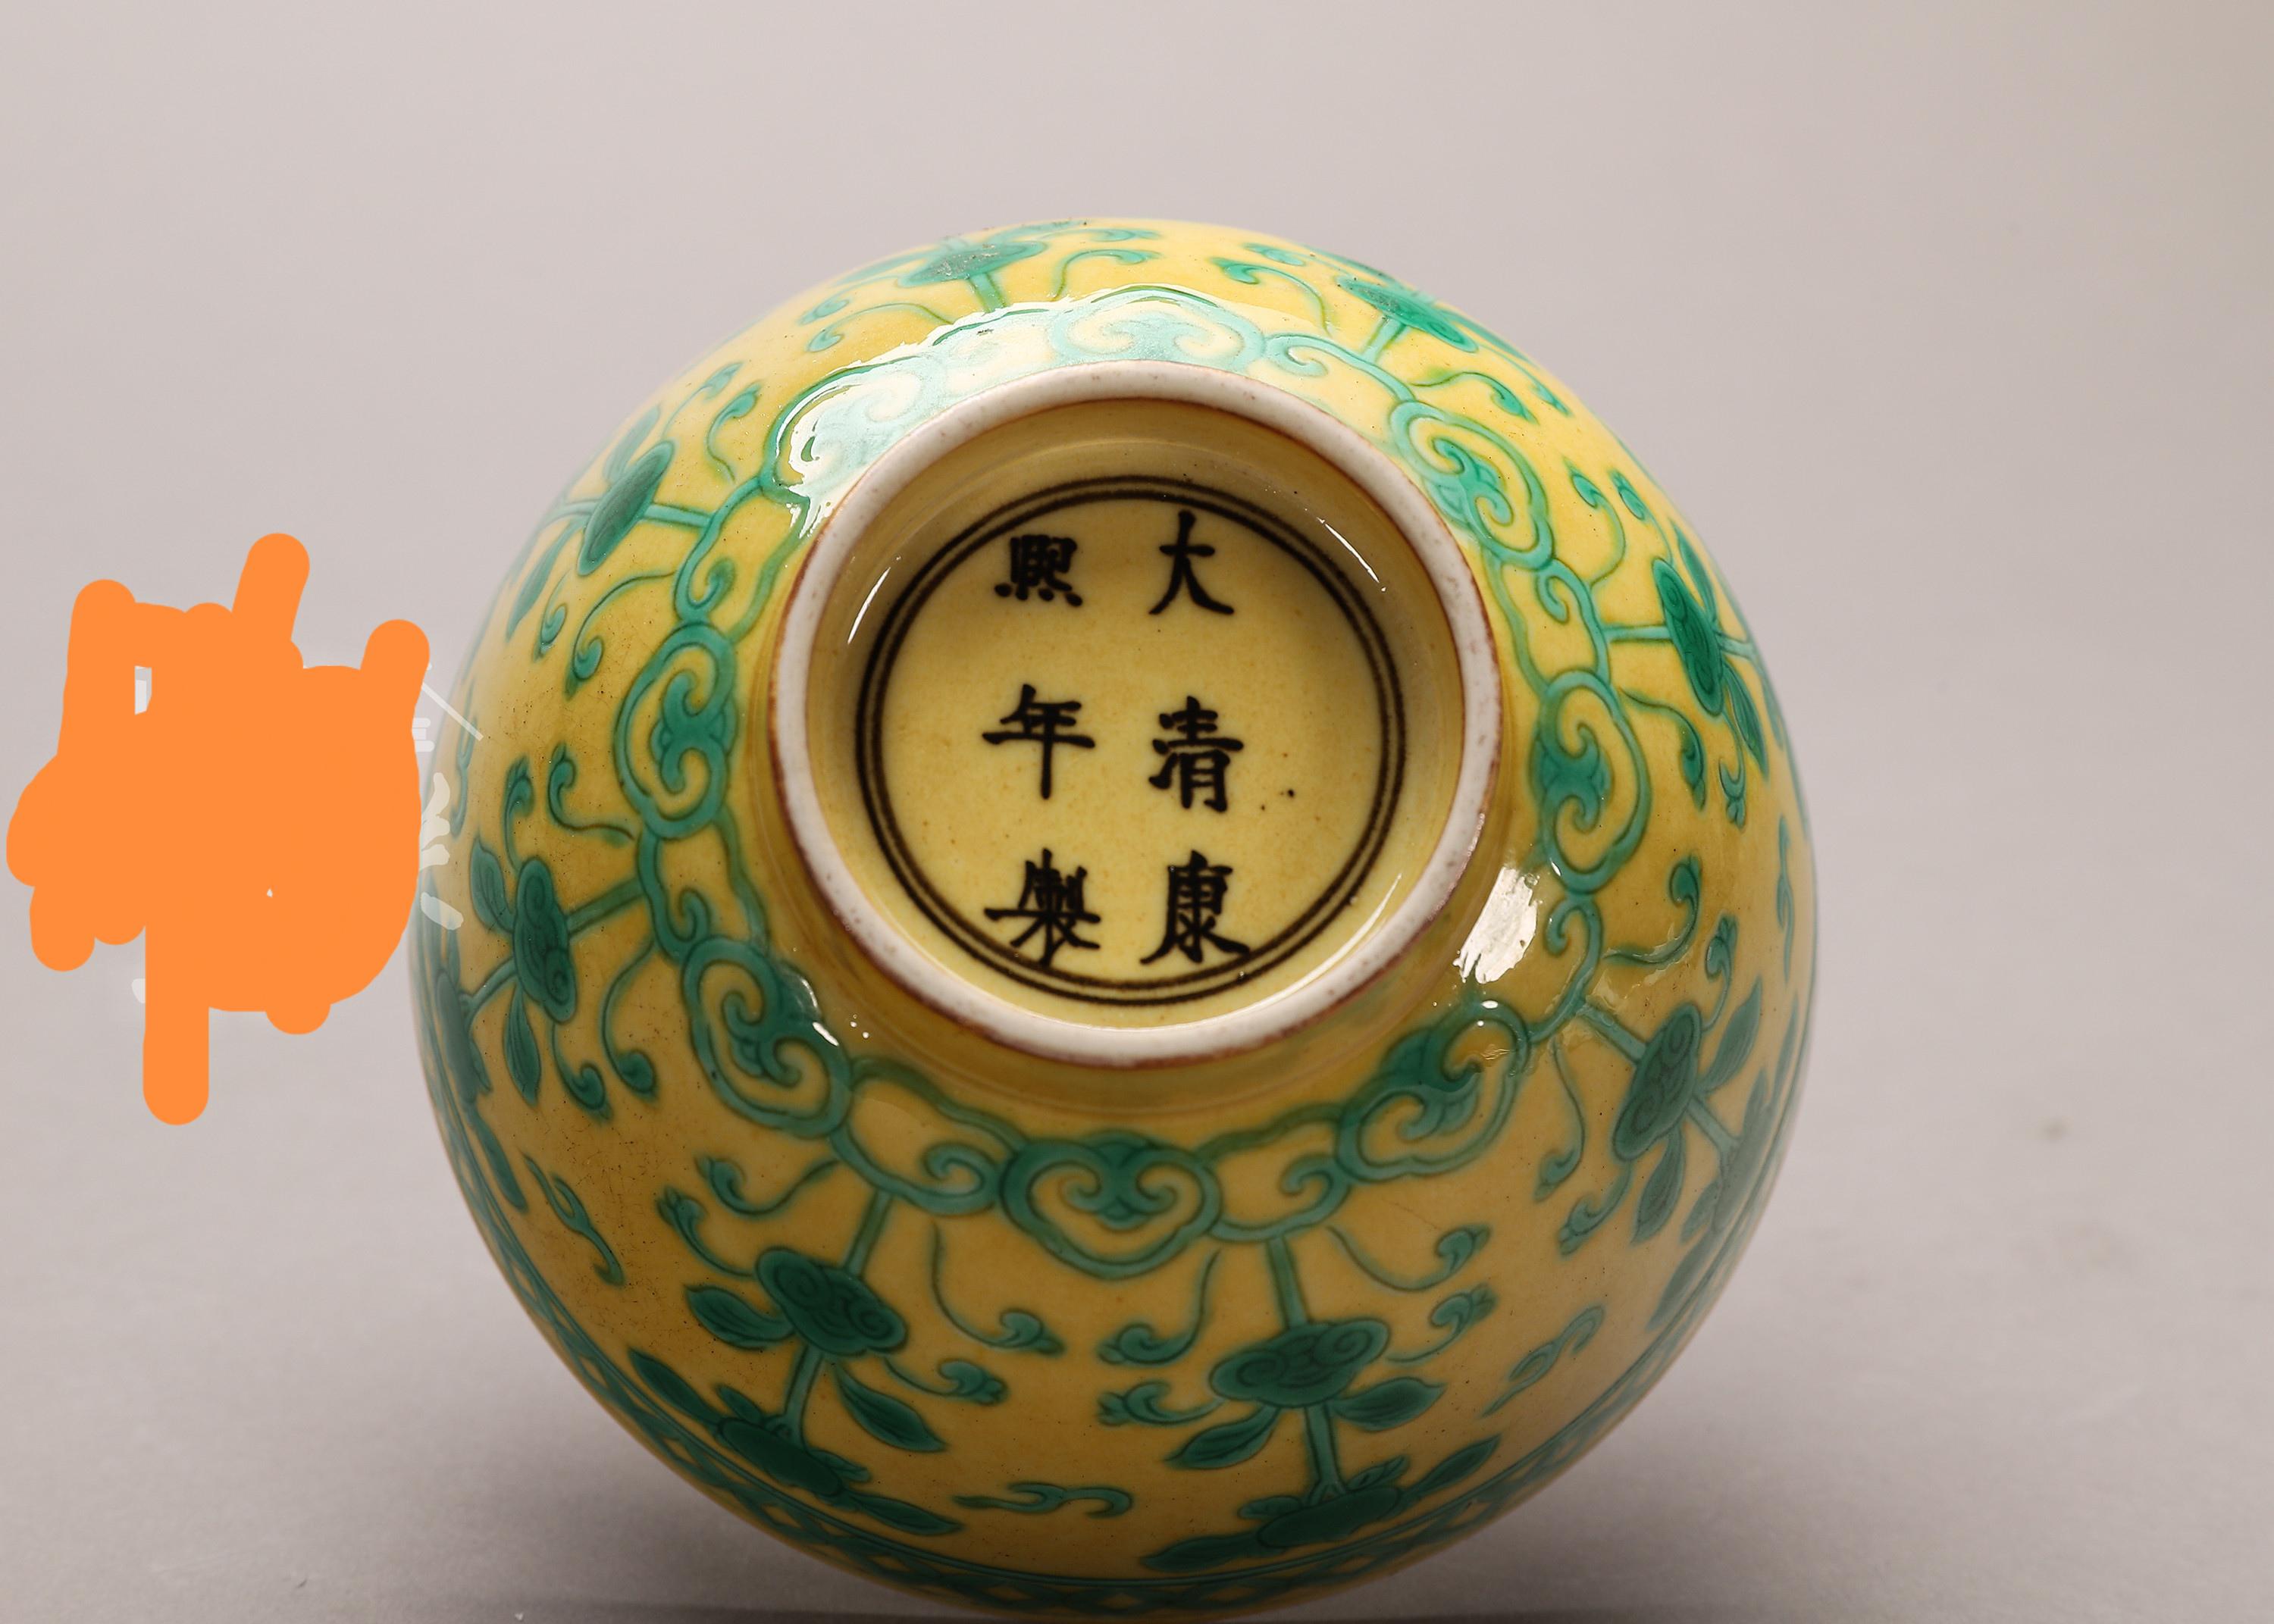 【全品割引】旧家買出品・ZU546清康熙年製 黄地青花緑彩雲龍紋皿 清